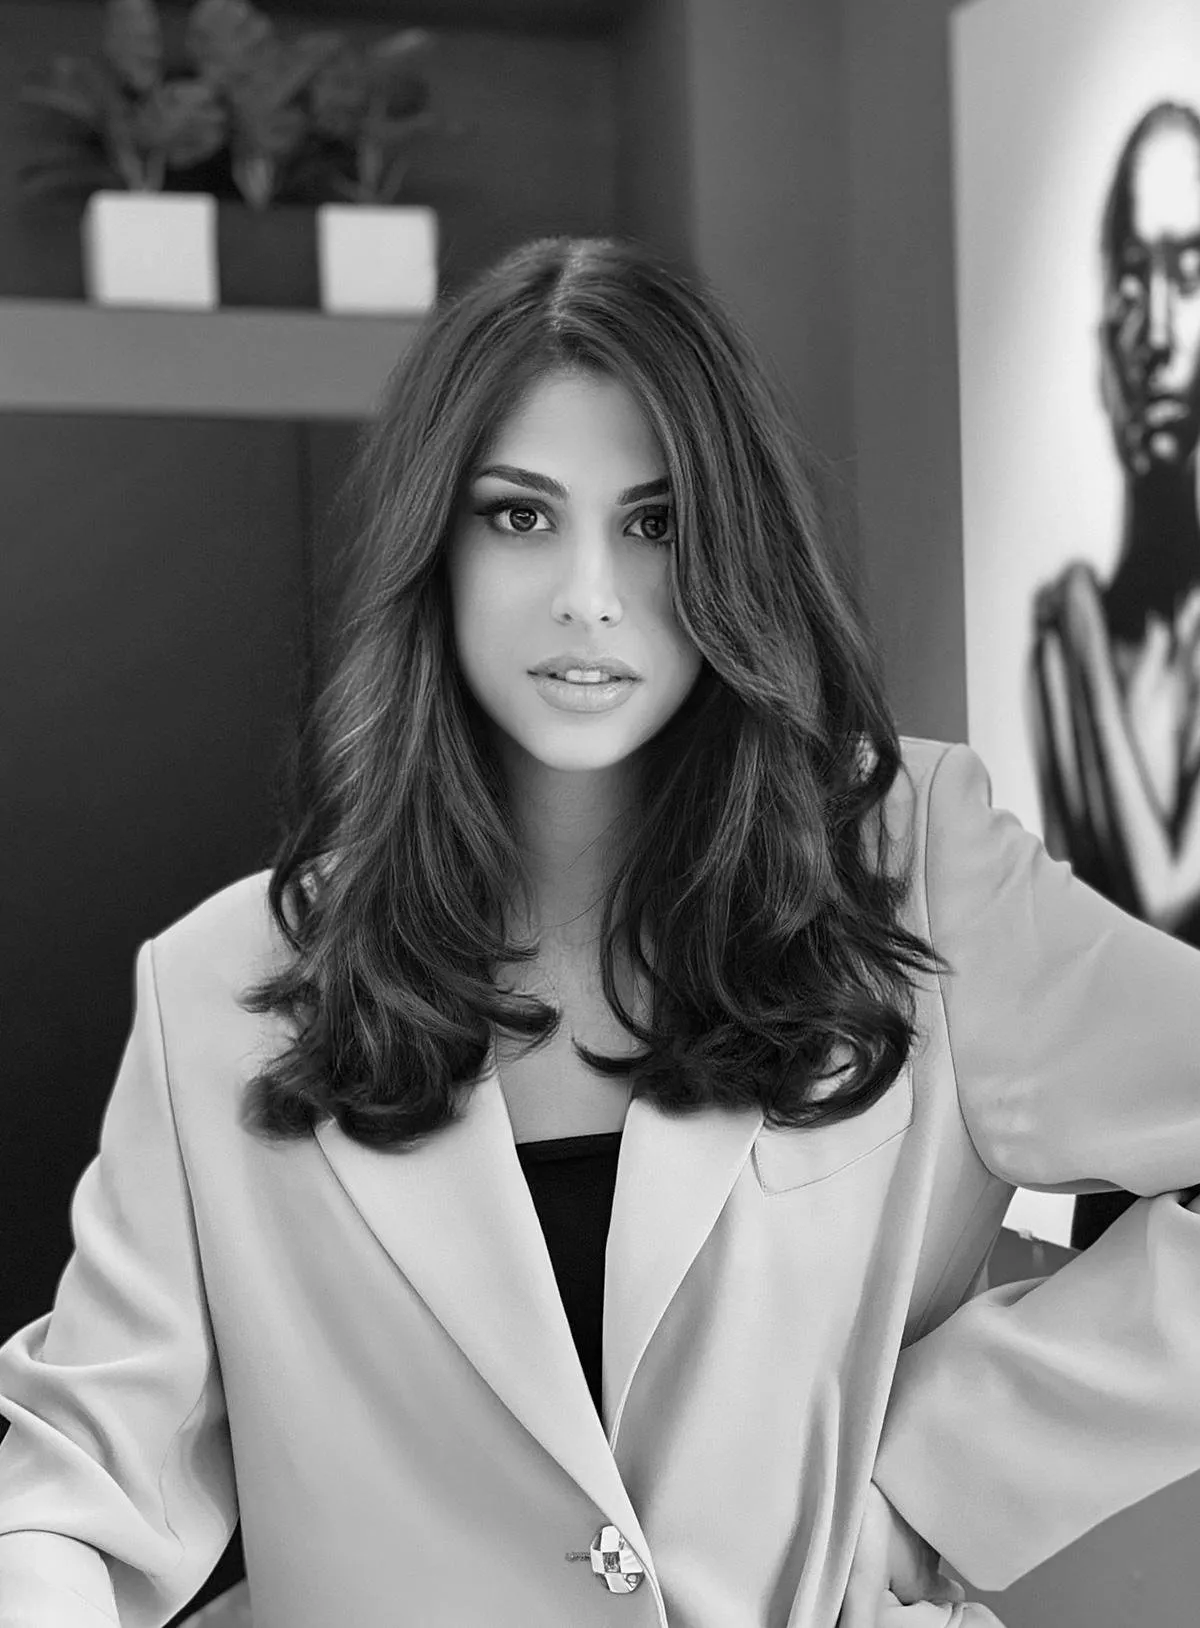 مقابلة خاصة مع المصمّمة اللبنانية Lara Zacca: صادقة مع نفسي ومع الهوية التي تحدّدني